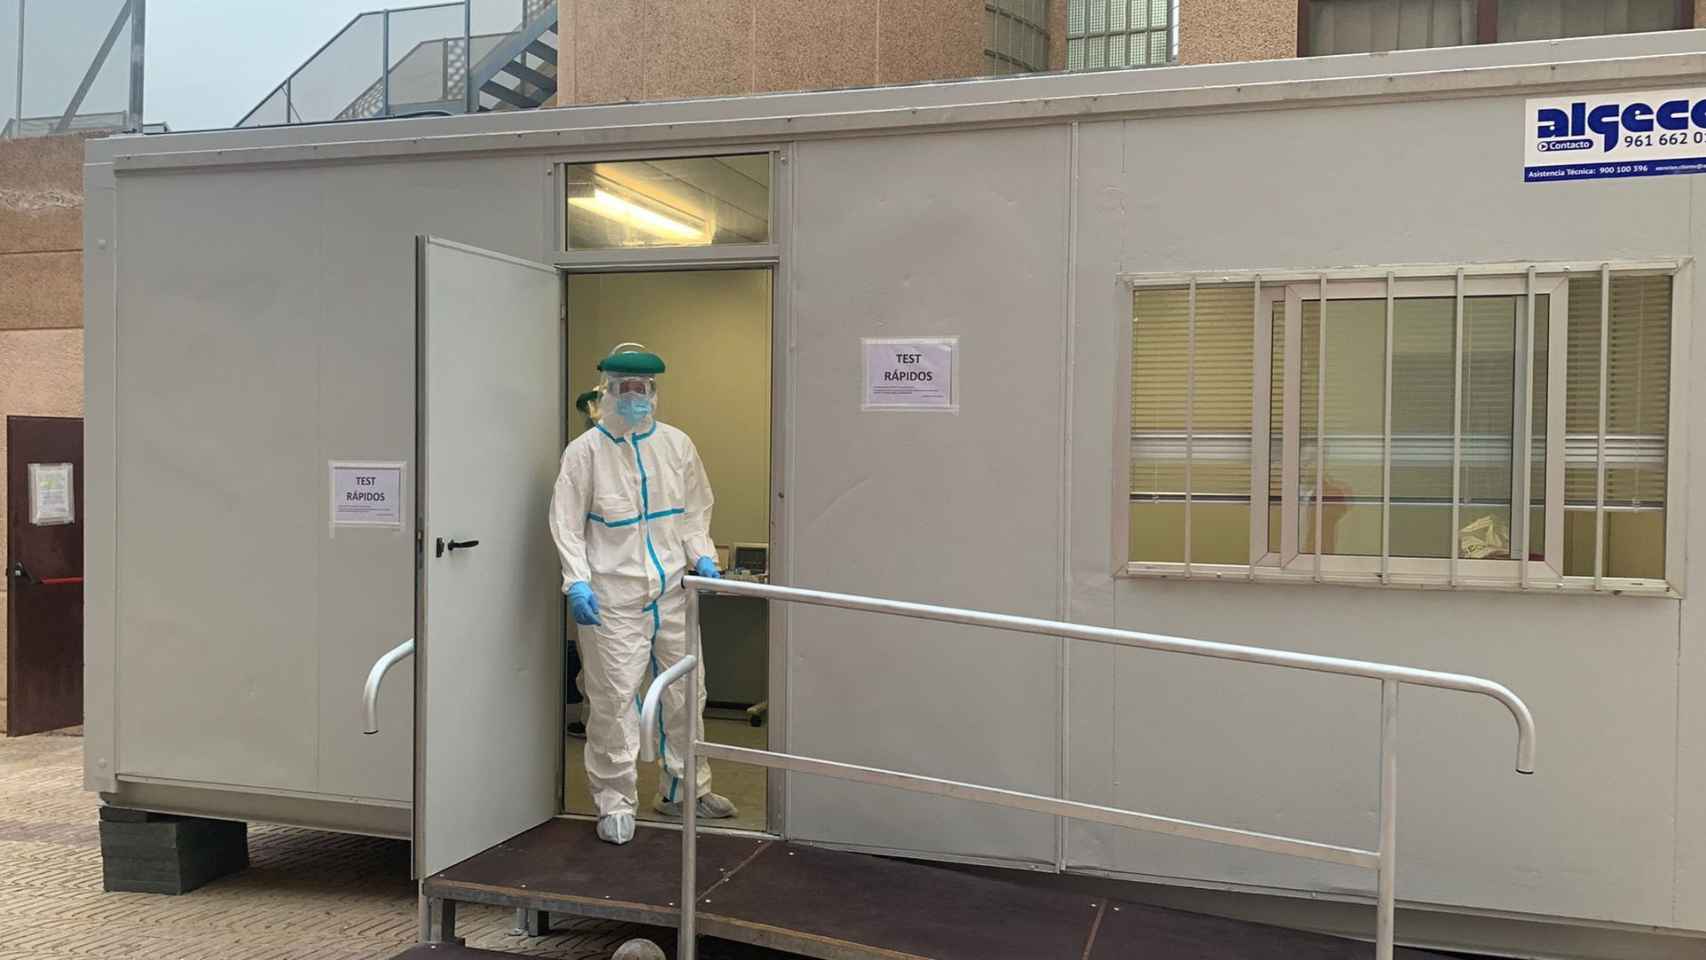 Módulo portátil instalado en 2021 en el Centro de Salud Clot de Joan para pruebas rápidas de detección de la COVID-19 / EP